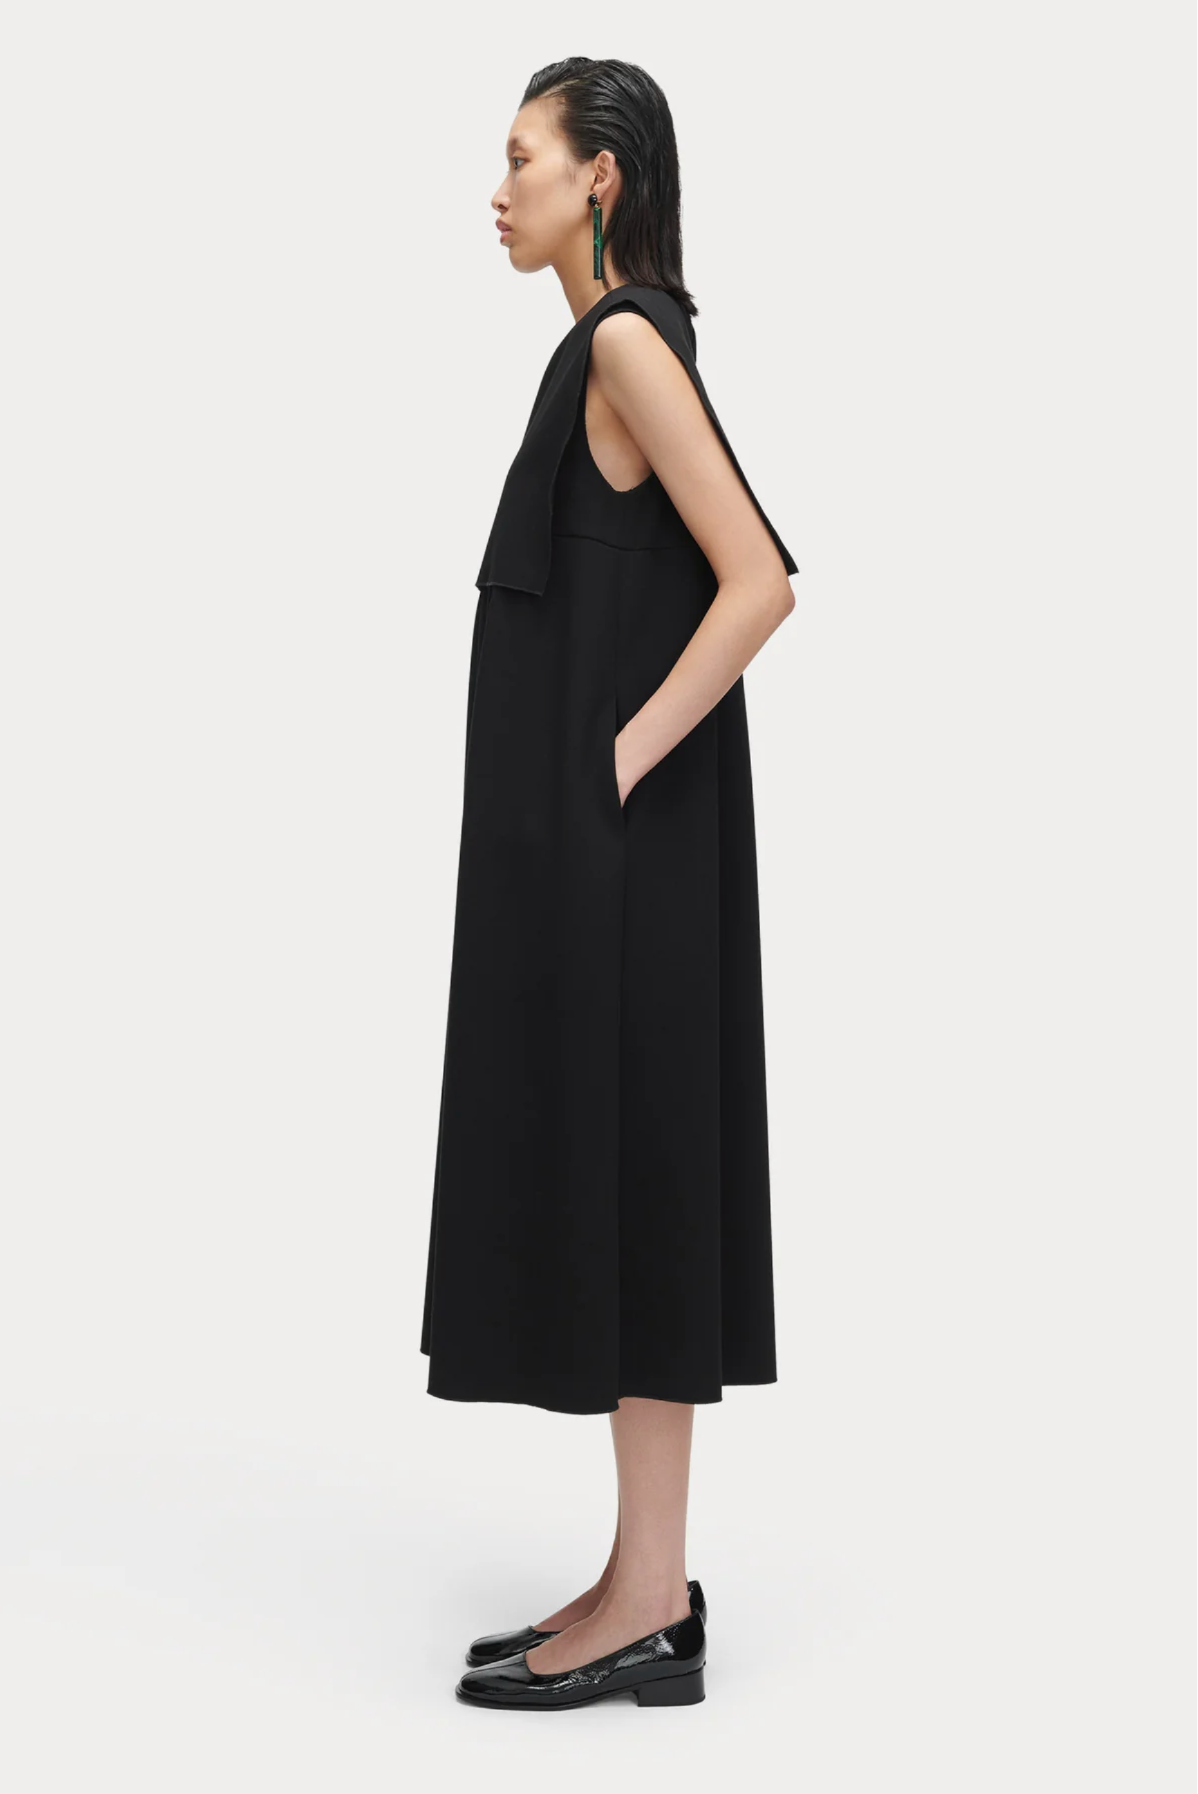 Baze Dress in Black by Rachel Comey